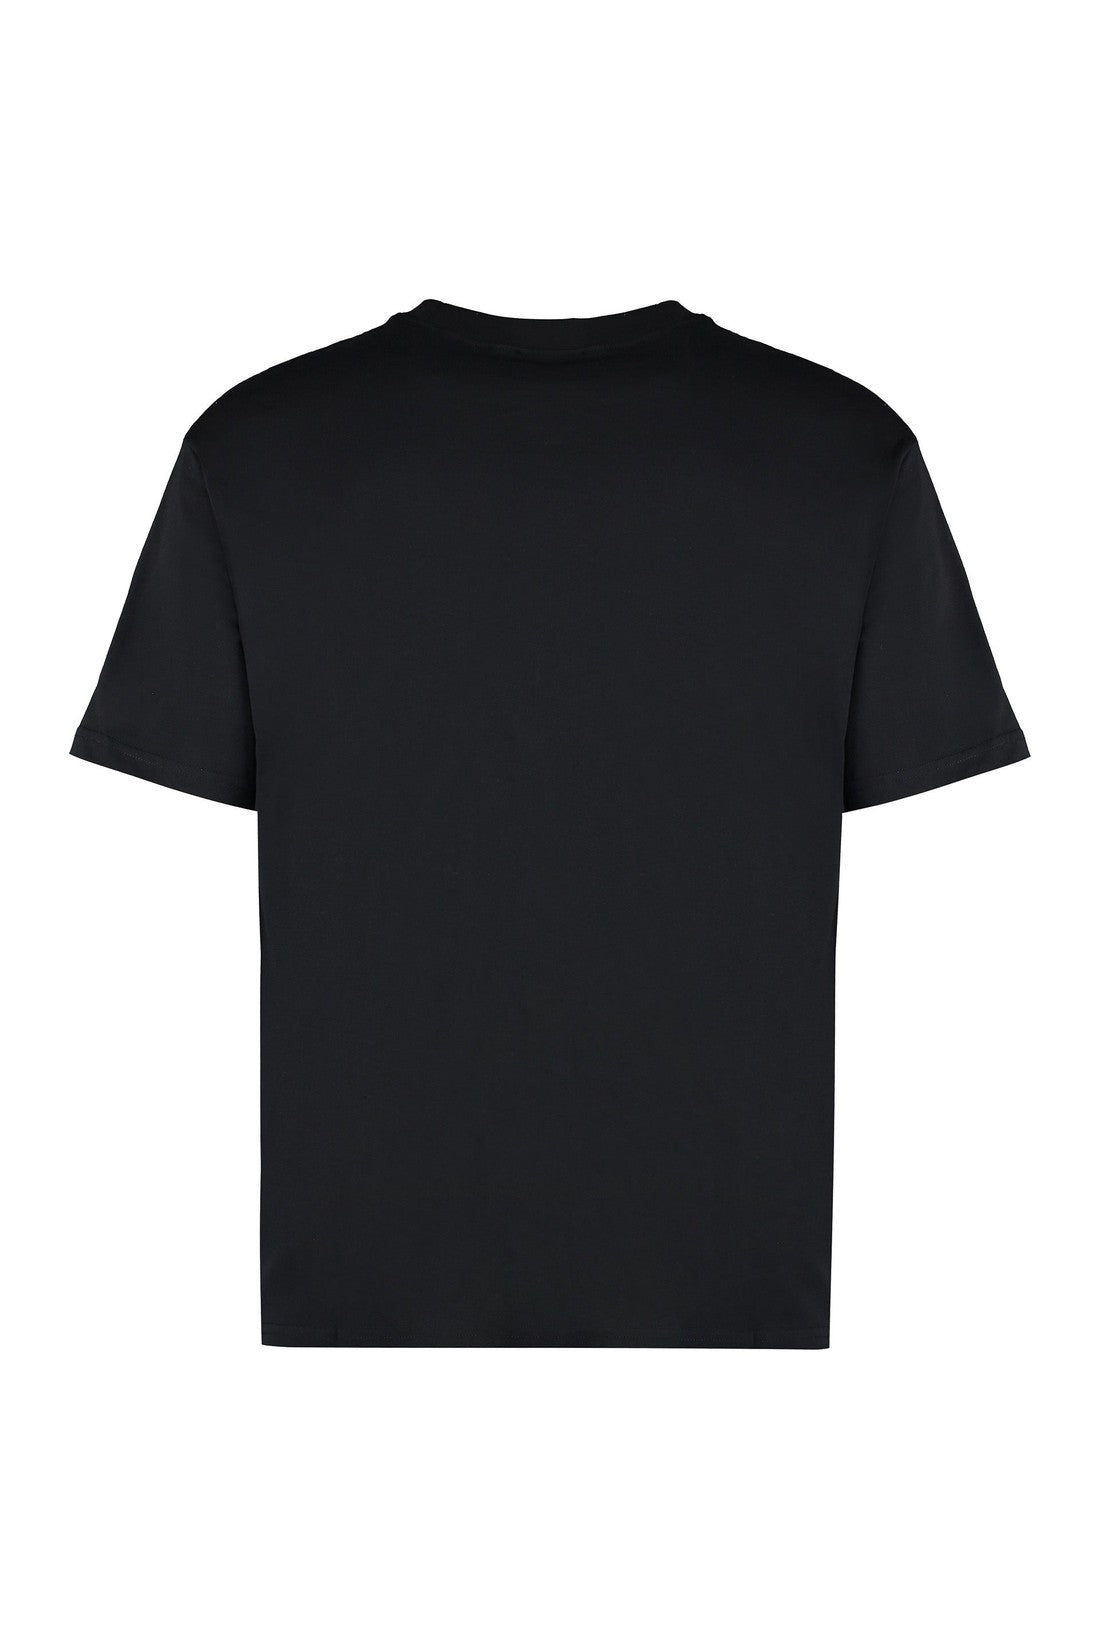 A.P.C.-OUTLET-SALE-Kyle cotton crew-neck T-shirt-ARCHIVIST